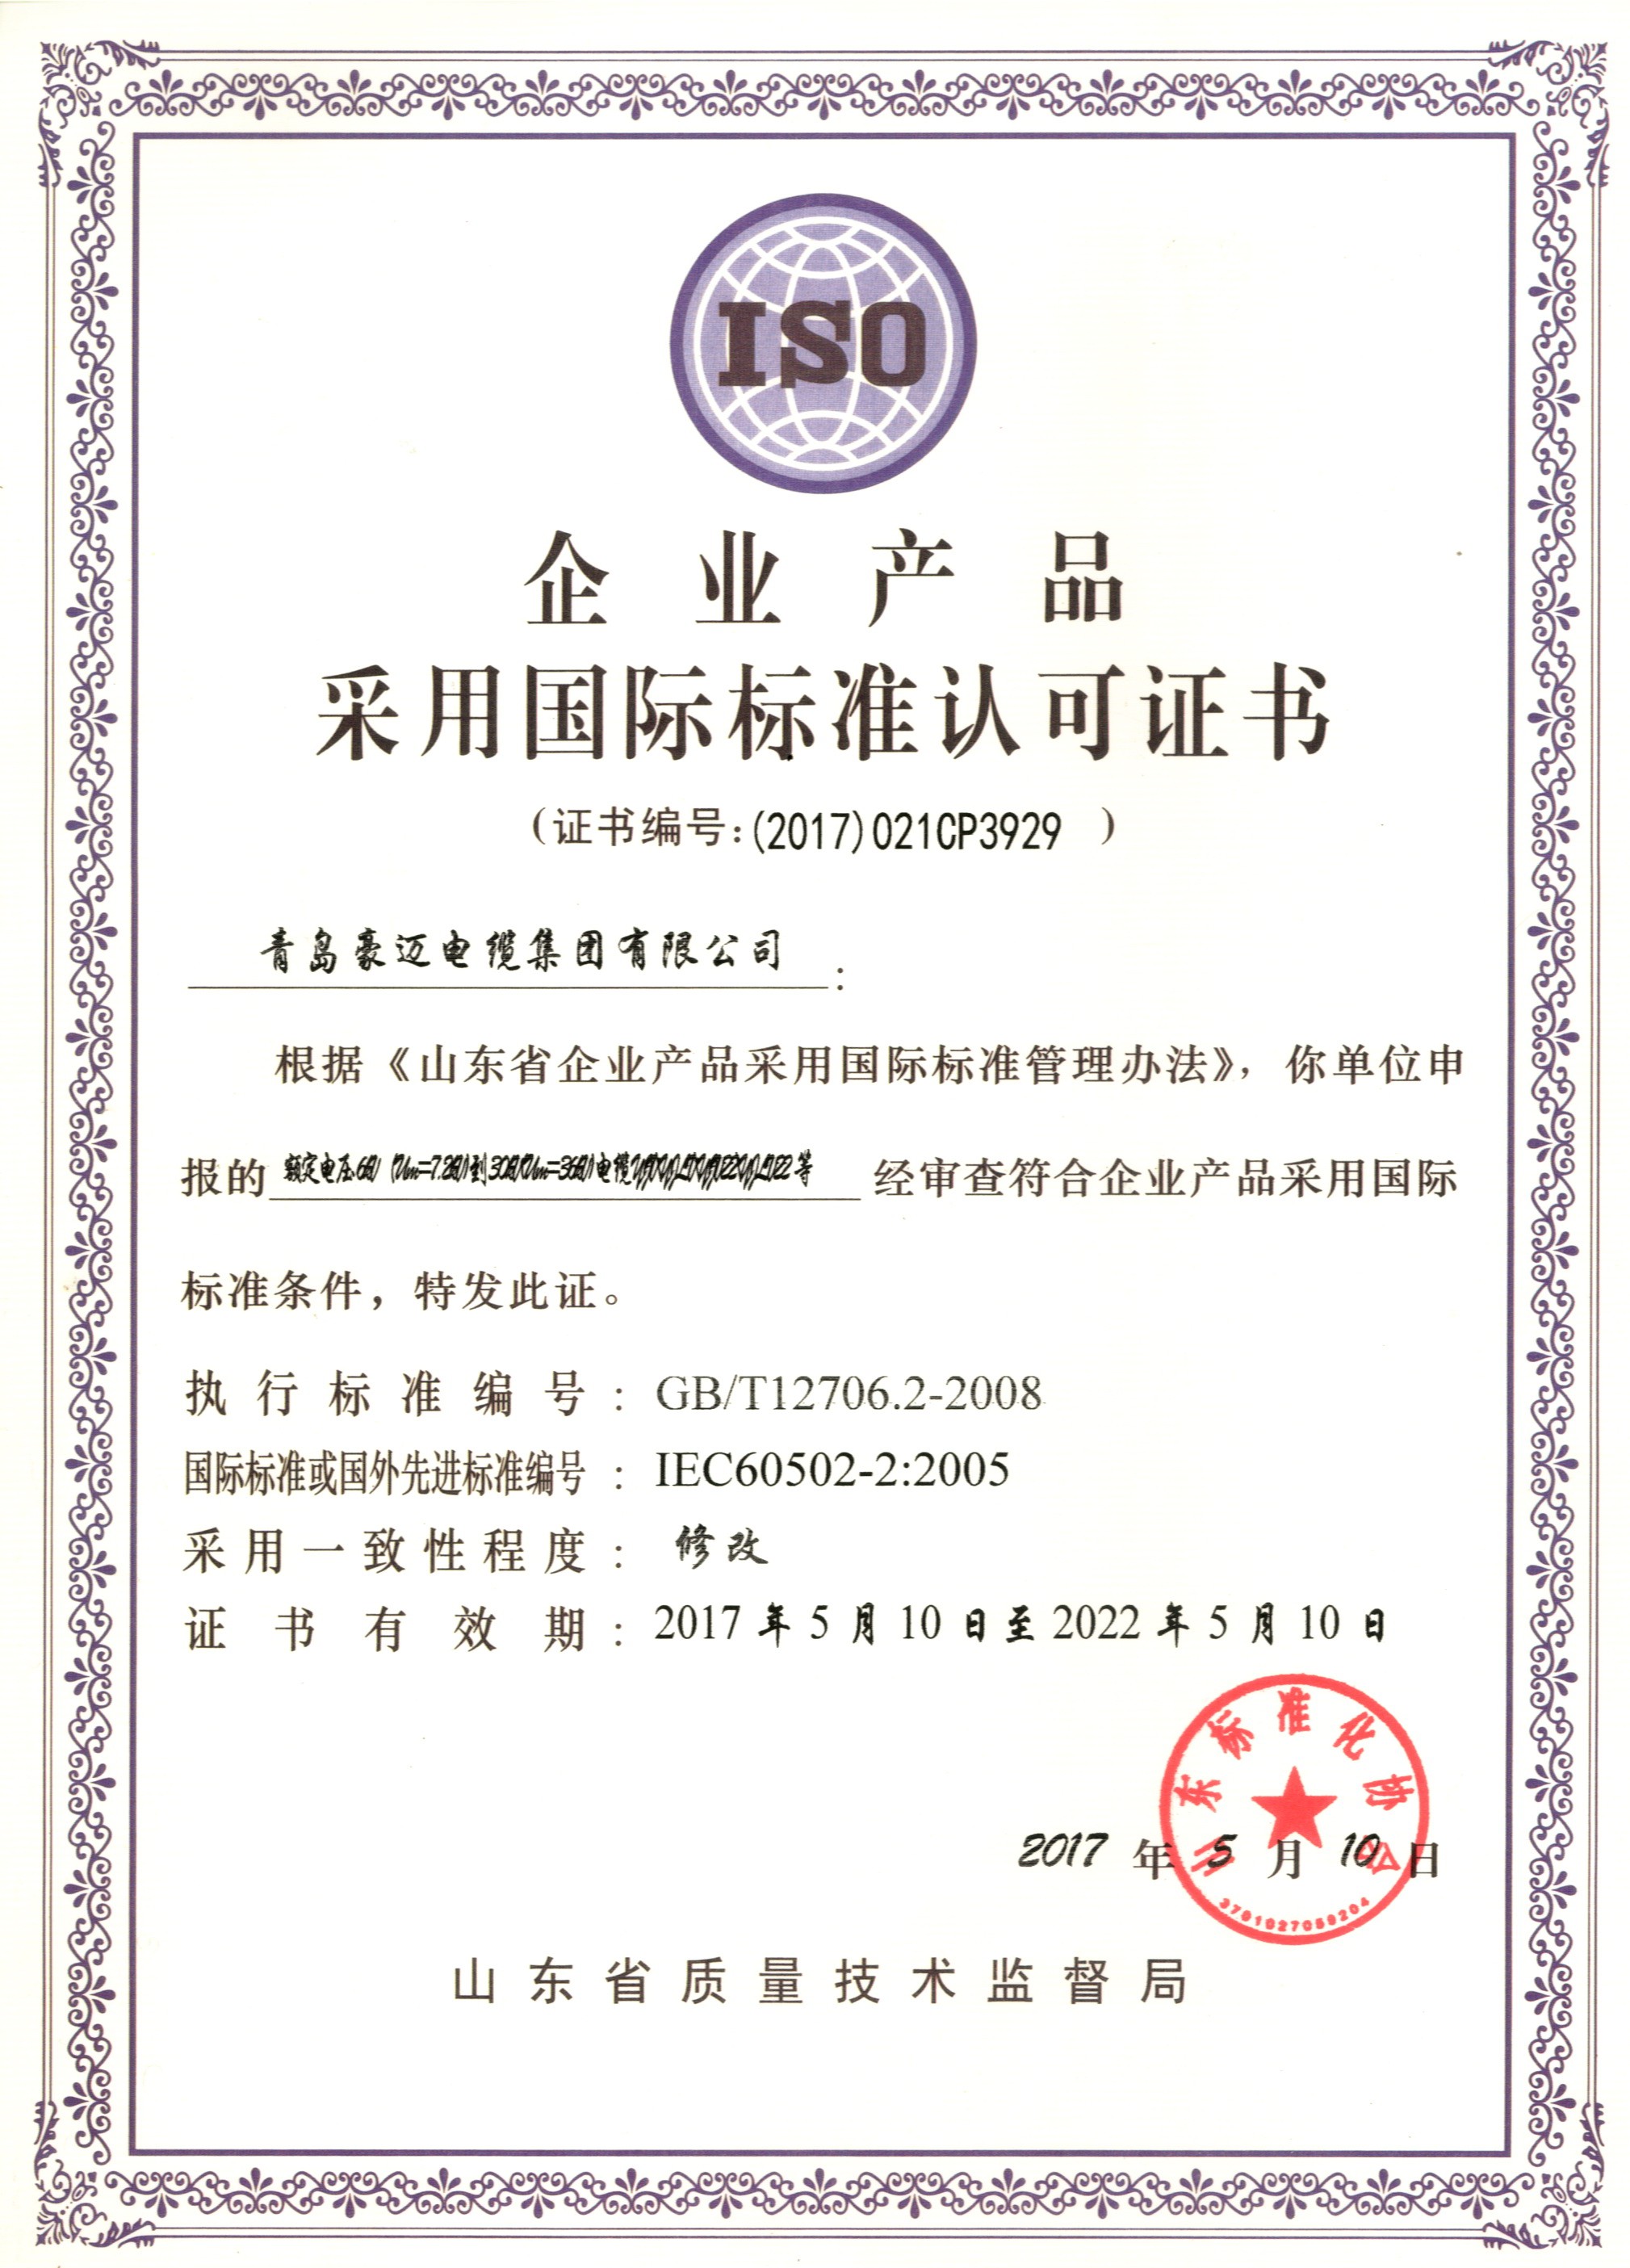 企业产品采用国际标准认可证书1